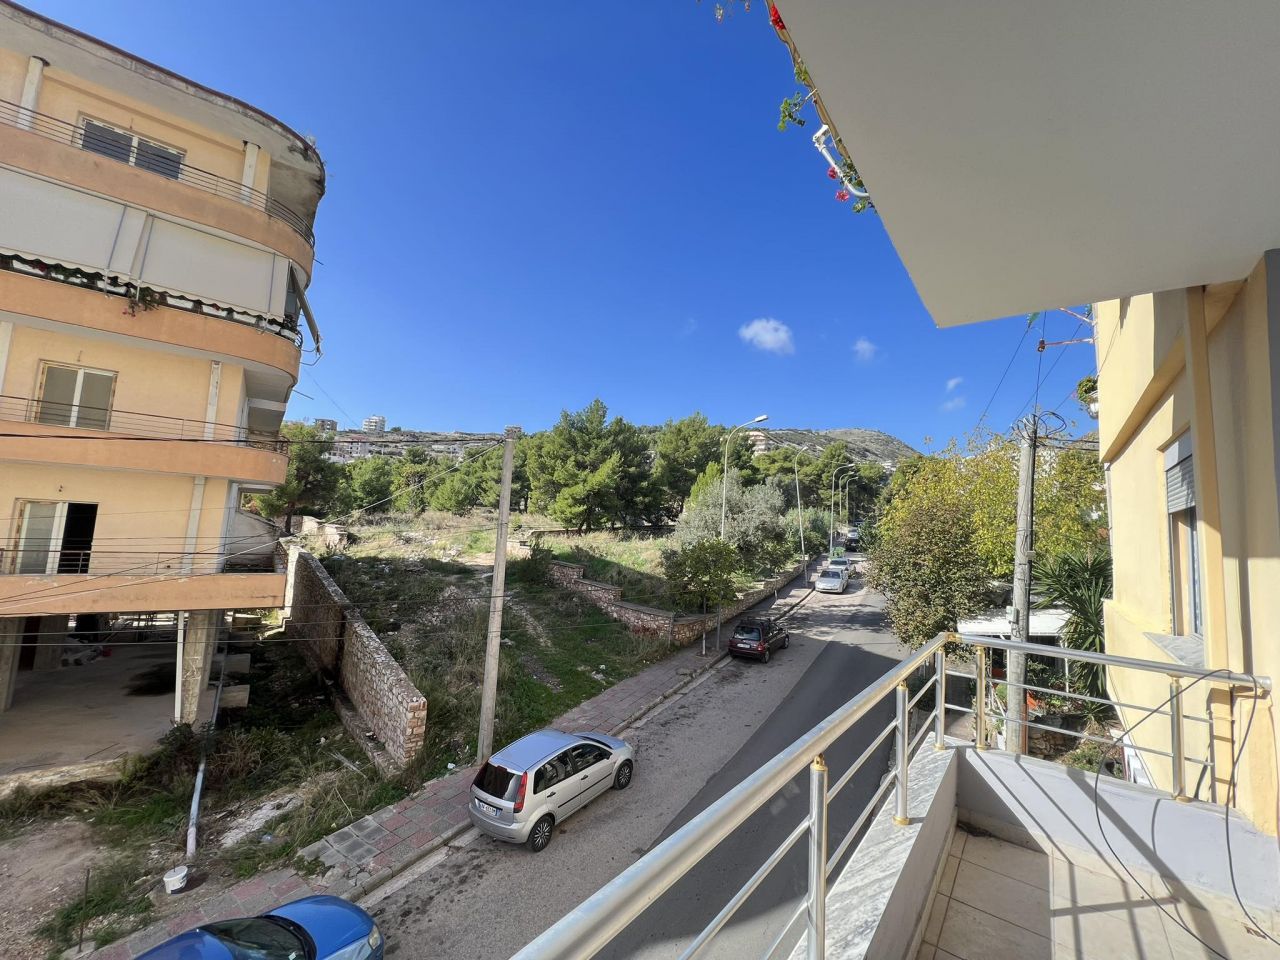 Zwei-Zimmer-Wohnung Zum Verkauf In Saranda  Albanien